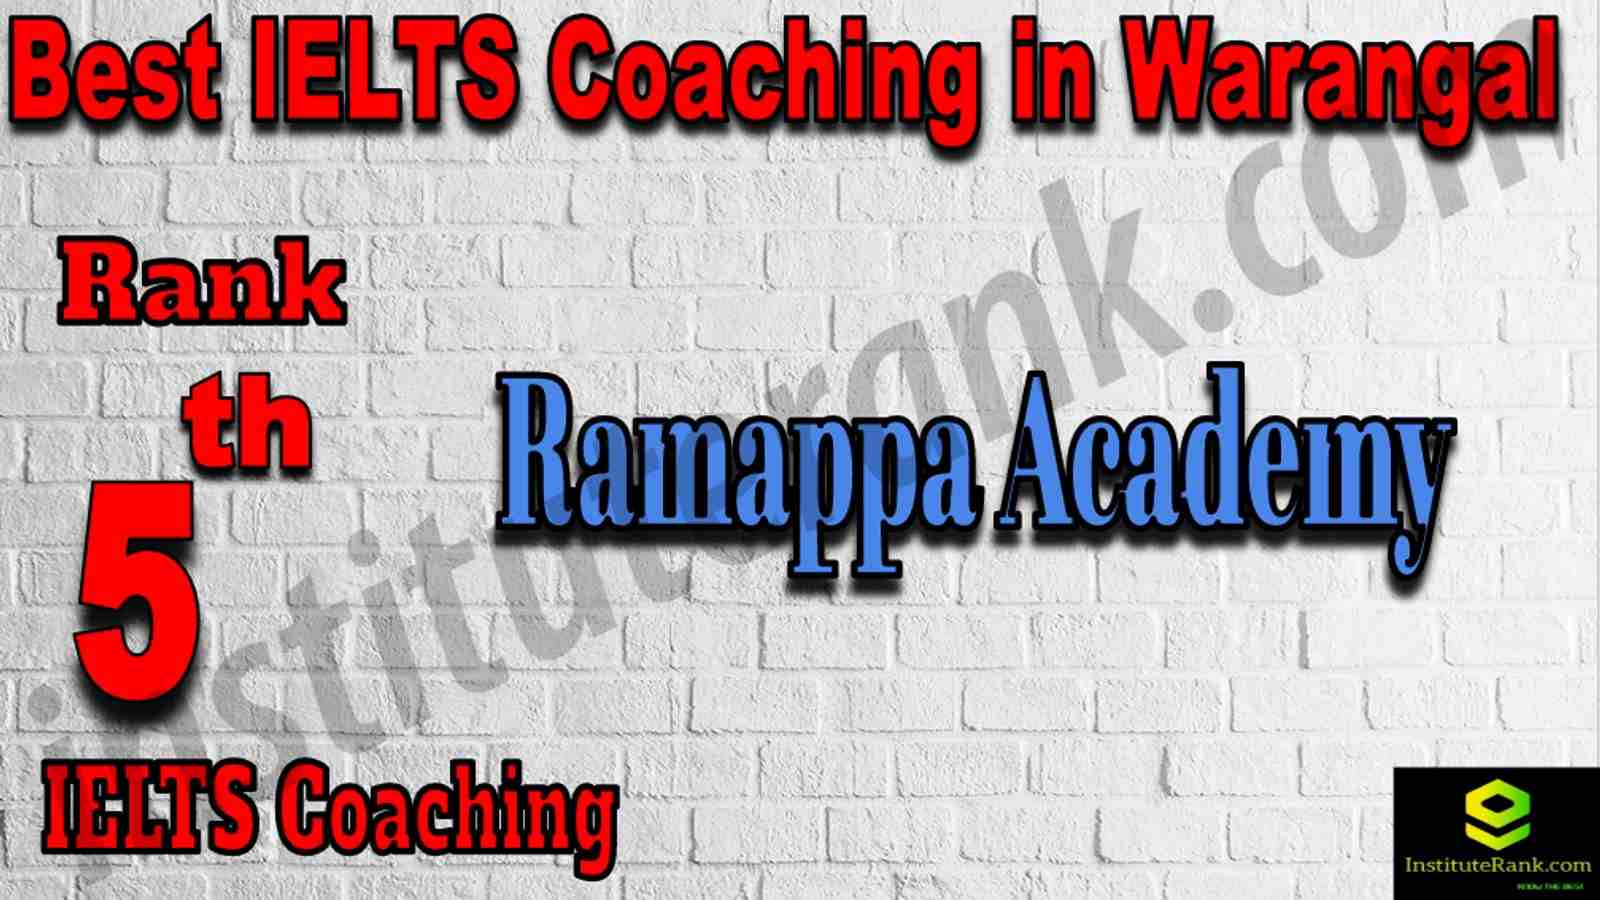 5th Best IELTS Coaching in Warangal